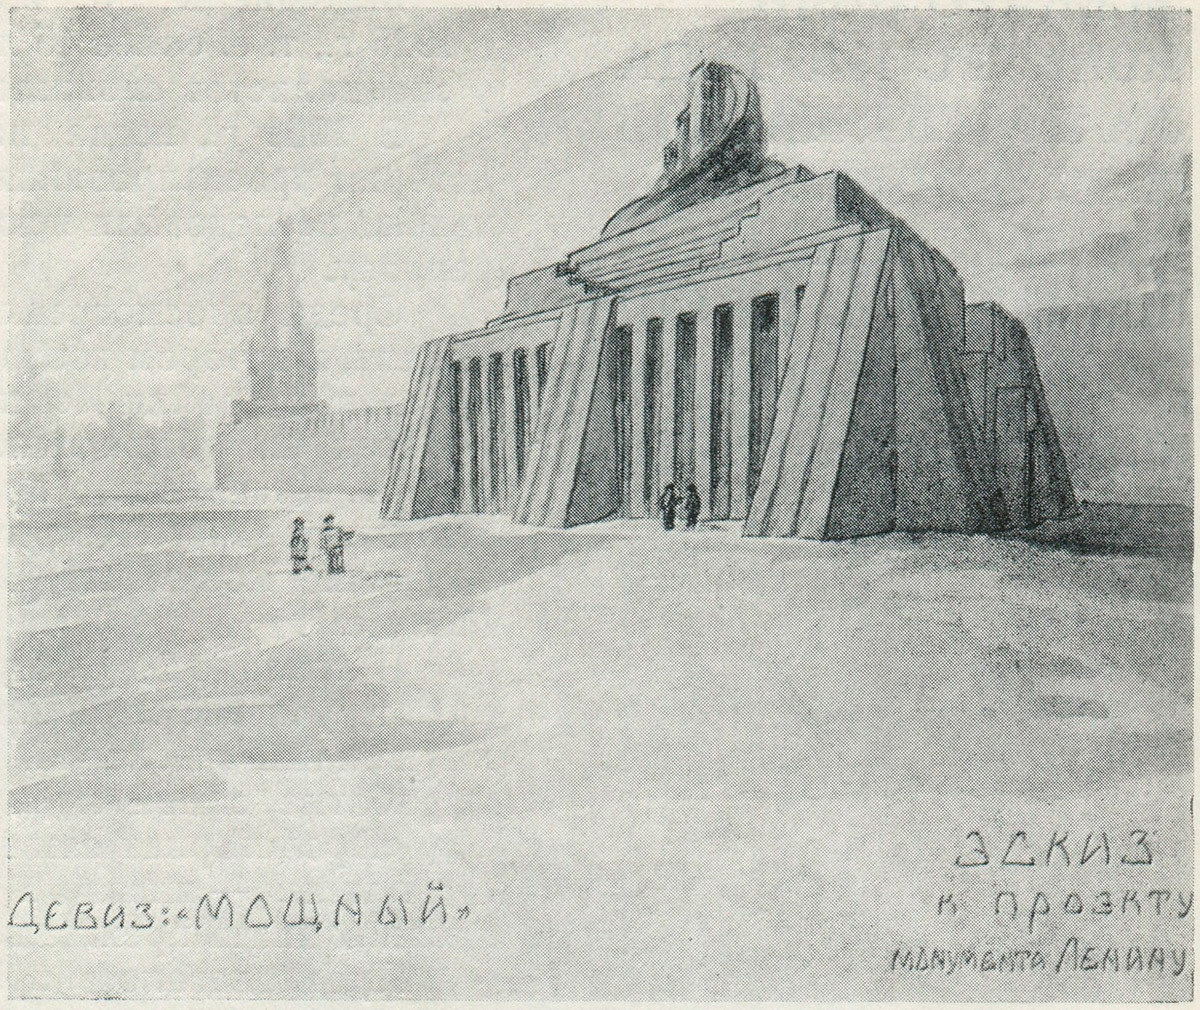 Rancangan V.M.Parodin-Nardson yang diberi nama 'Moshchnyy' (Kuat).